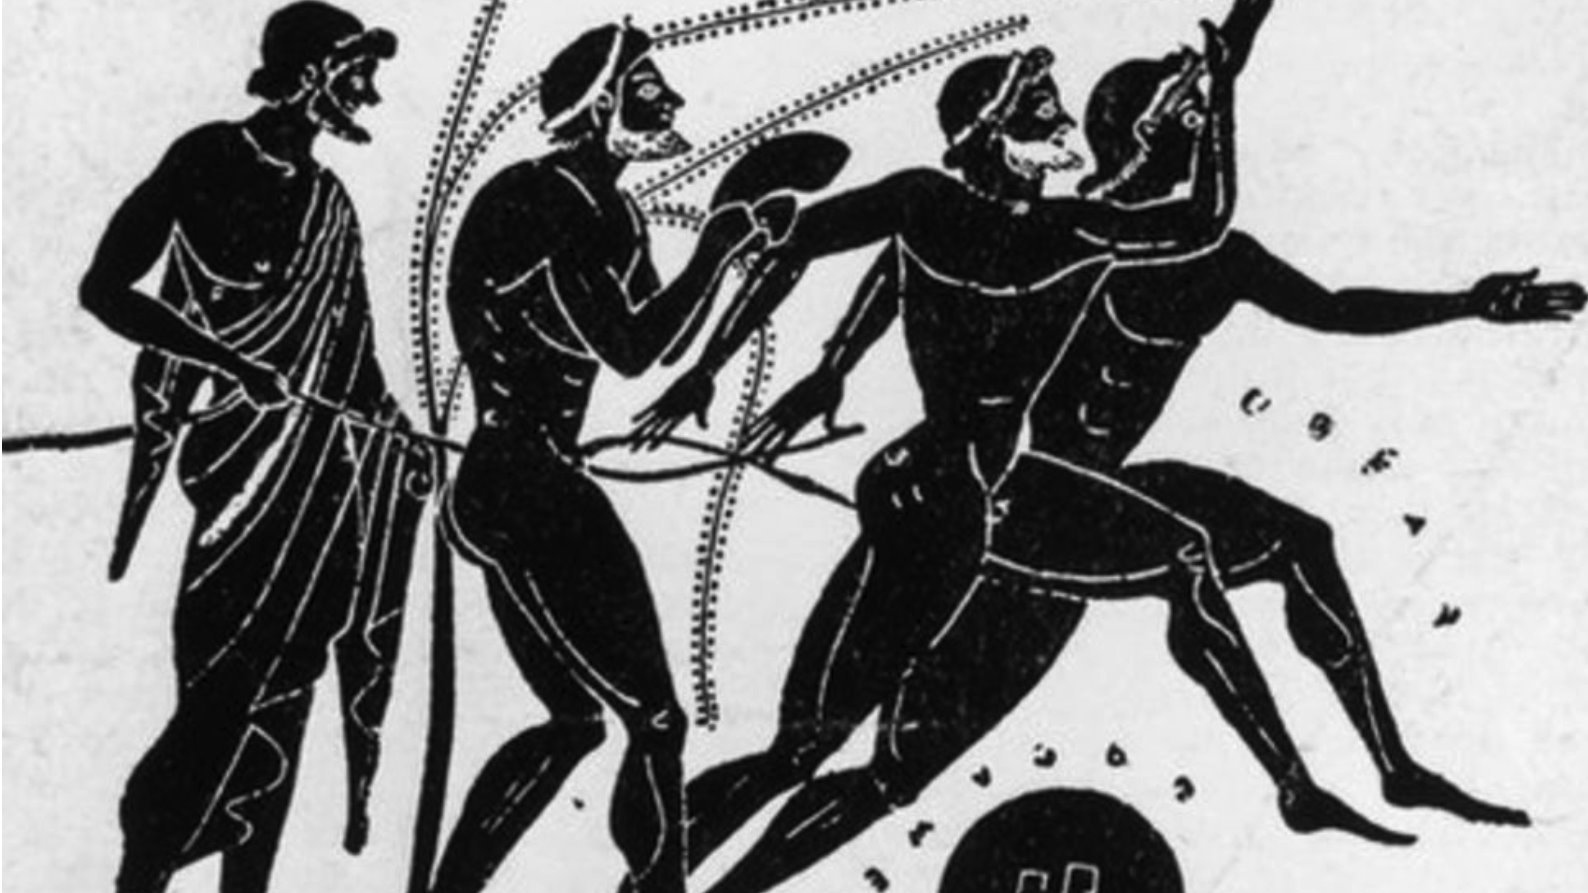 como eram os Jogos Olímpicos na Antiguidade: adoração a deuses